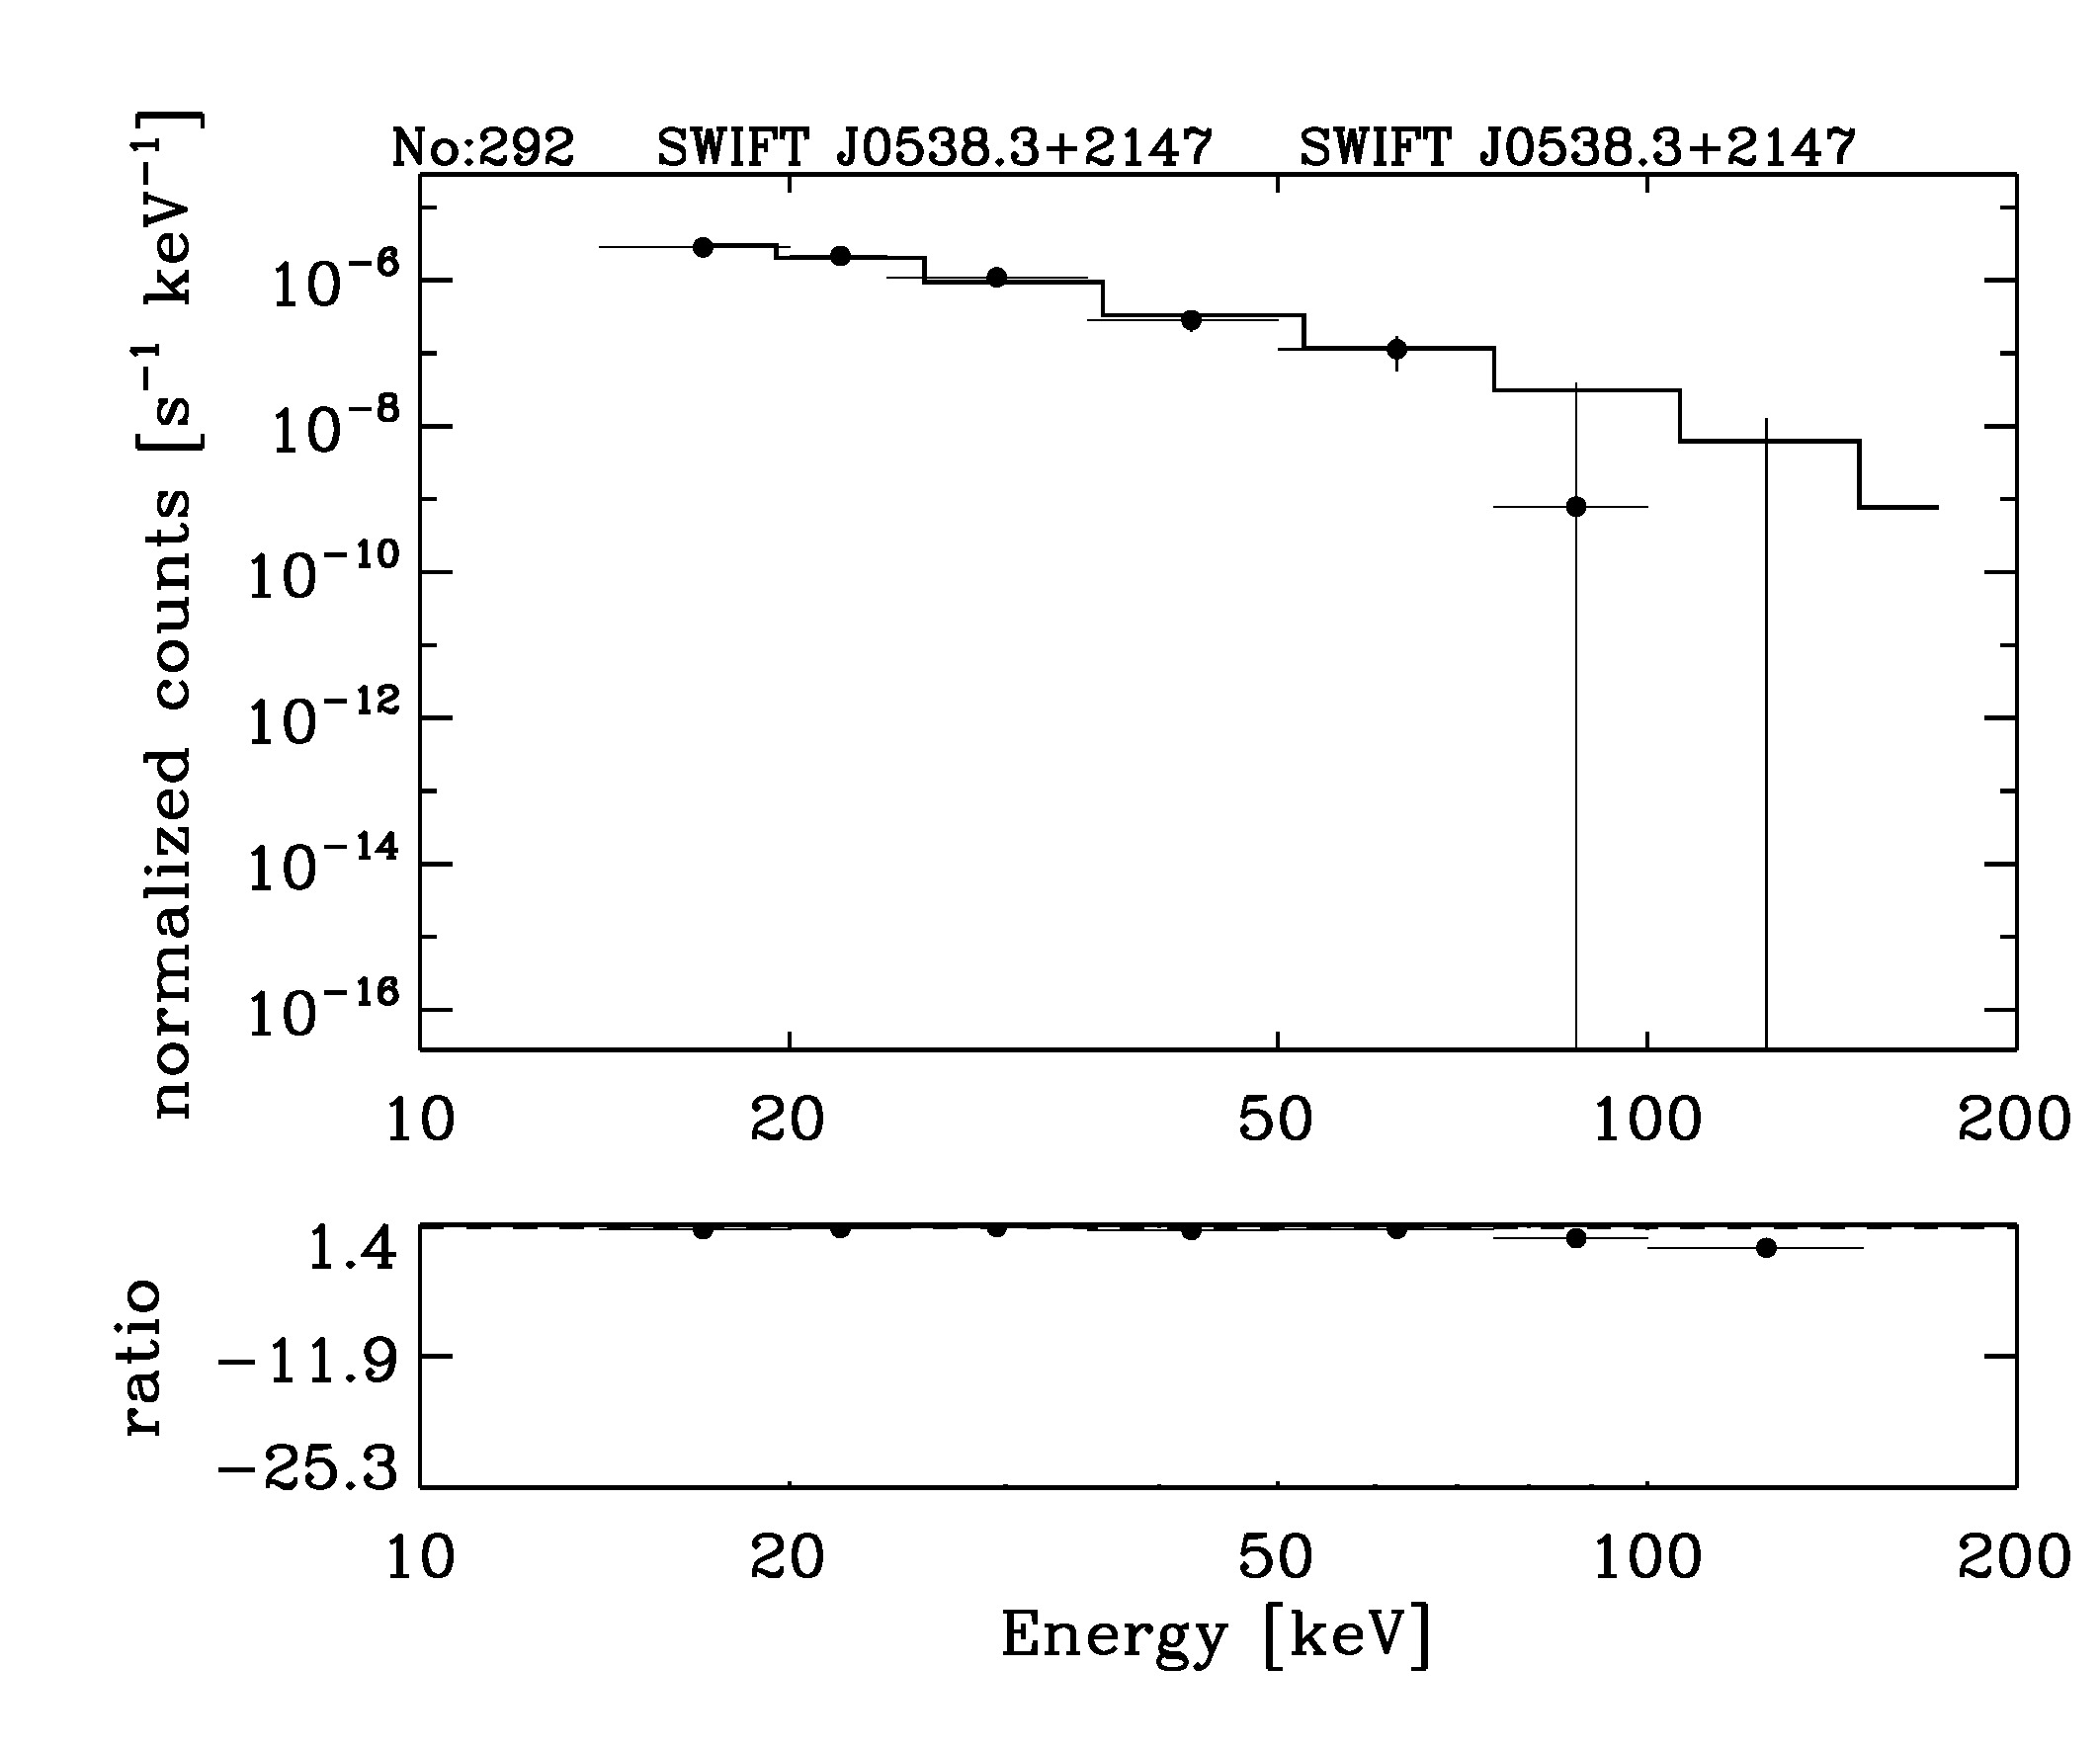 BAT Spectrum for SWIFT J0538.3+2147